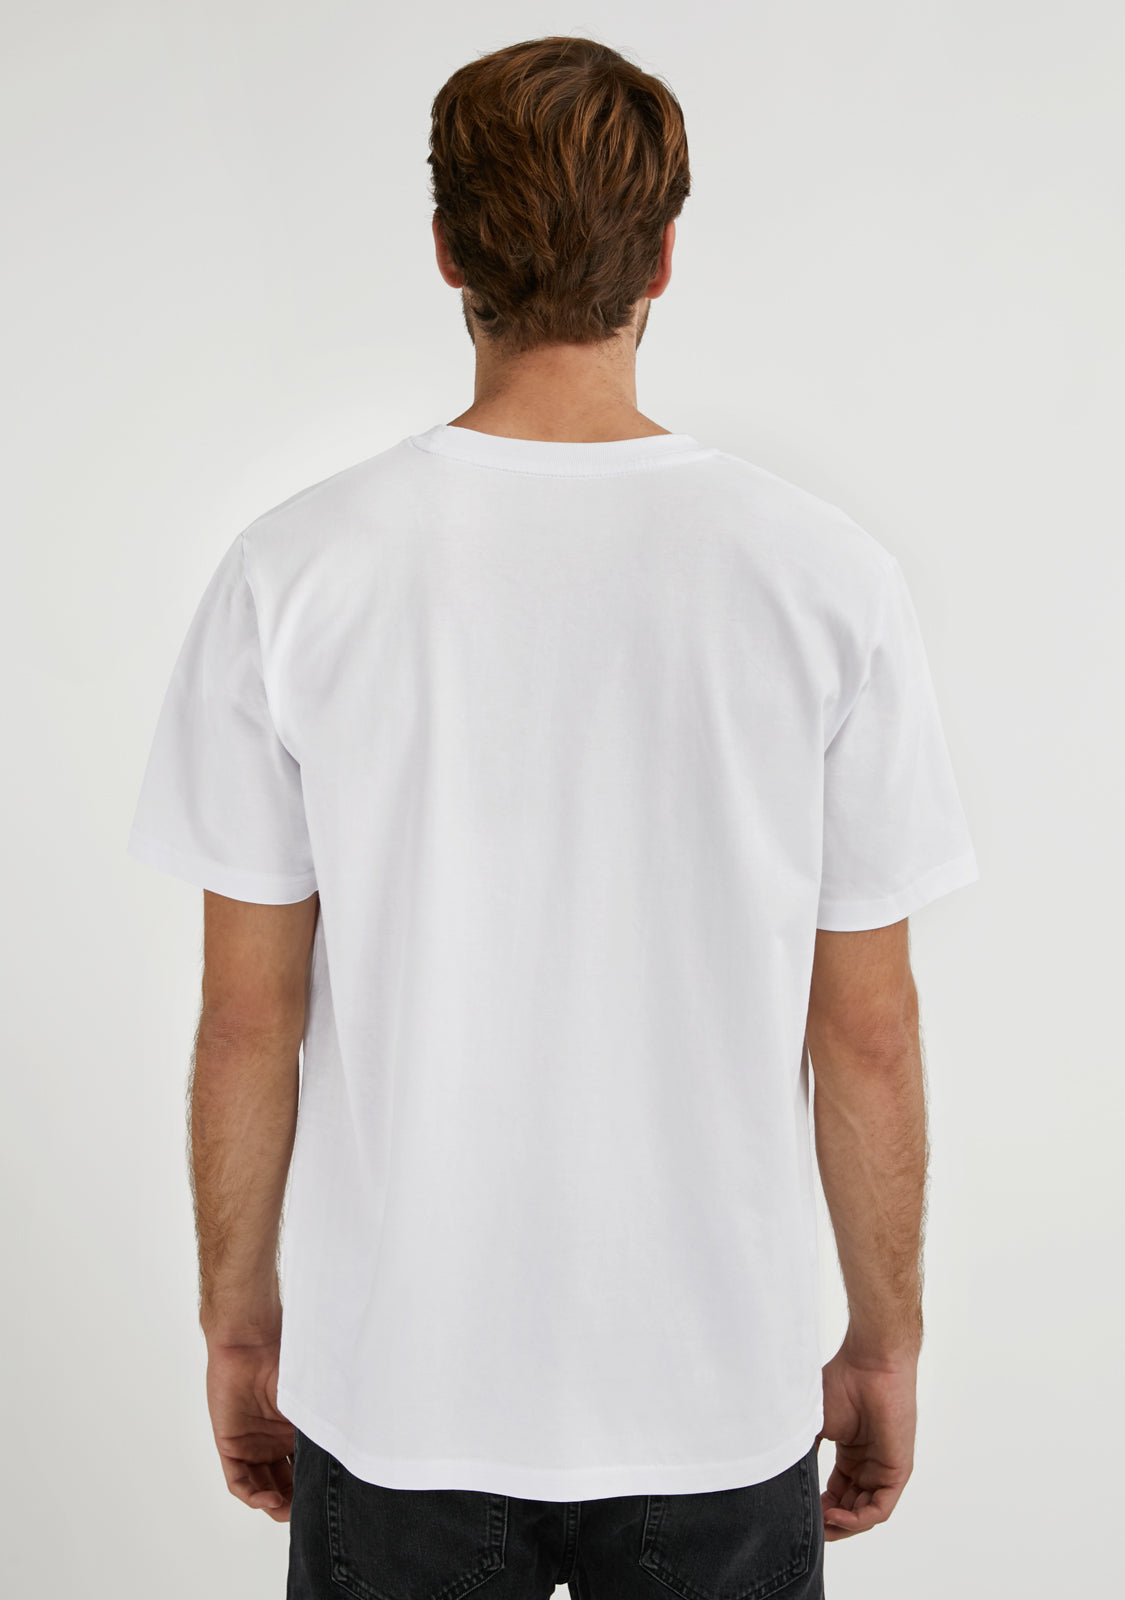 Basic Logo T-Shirt White / Black